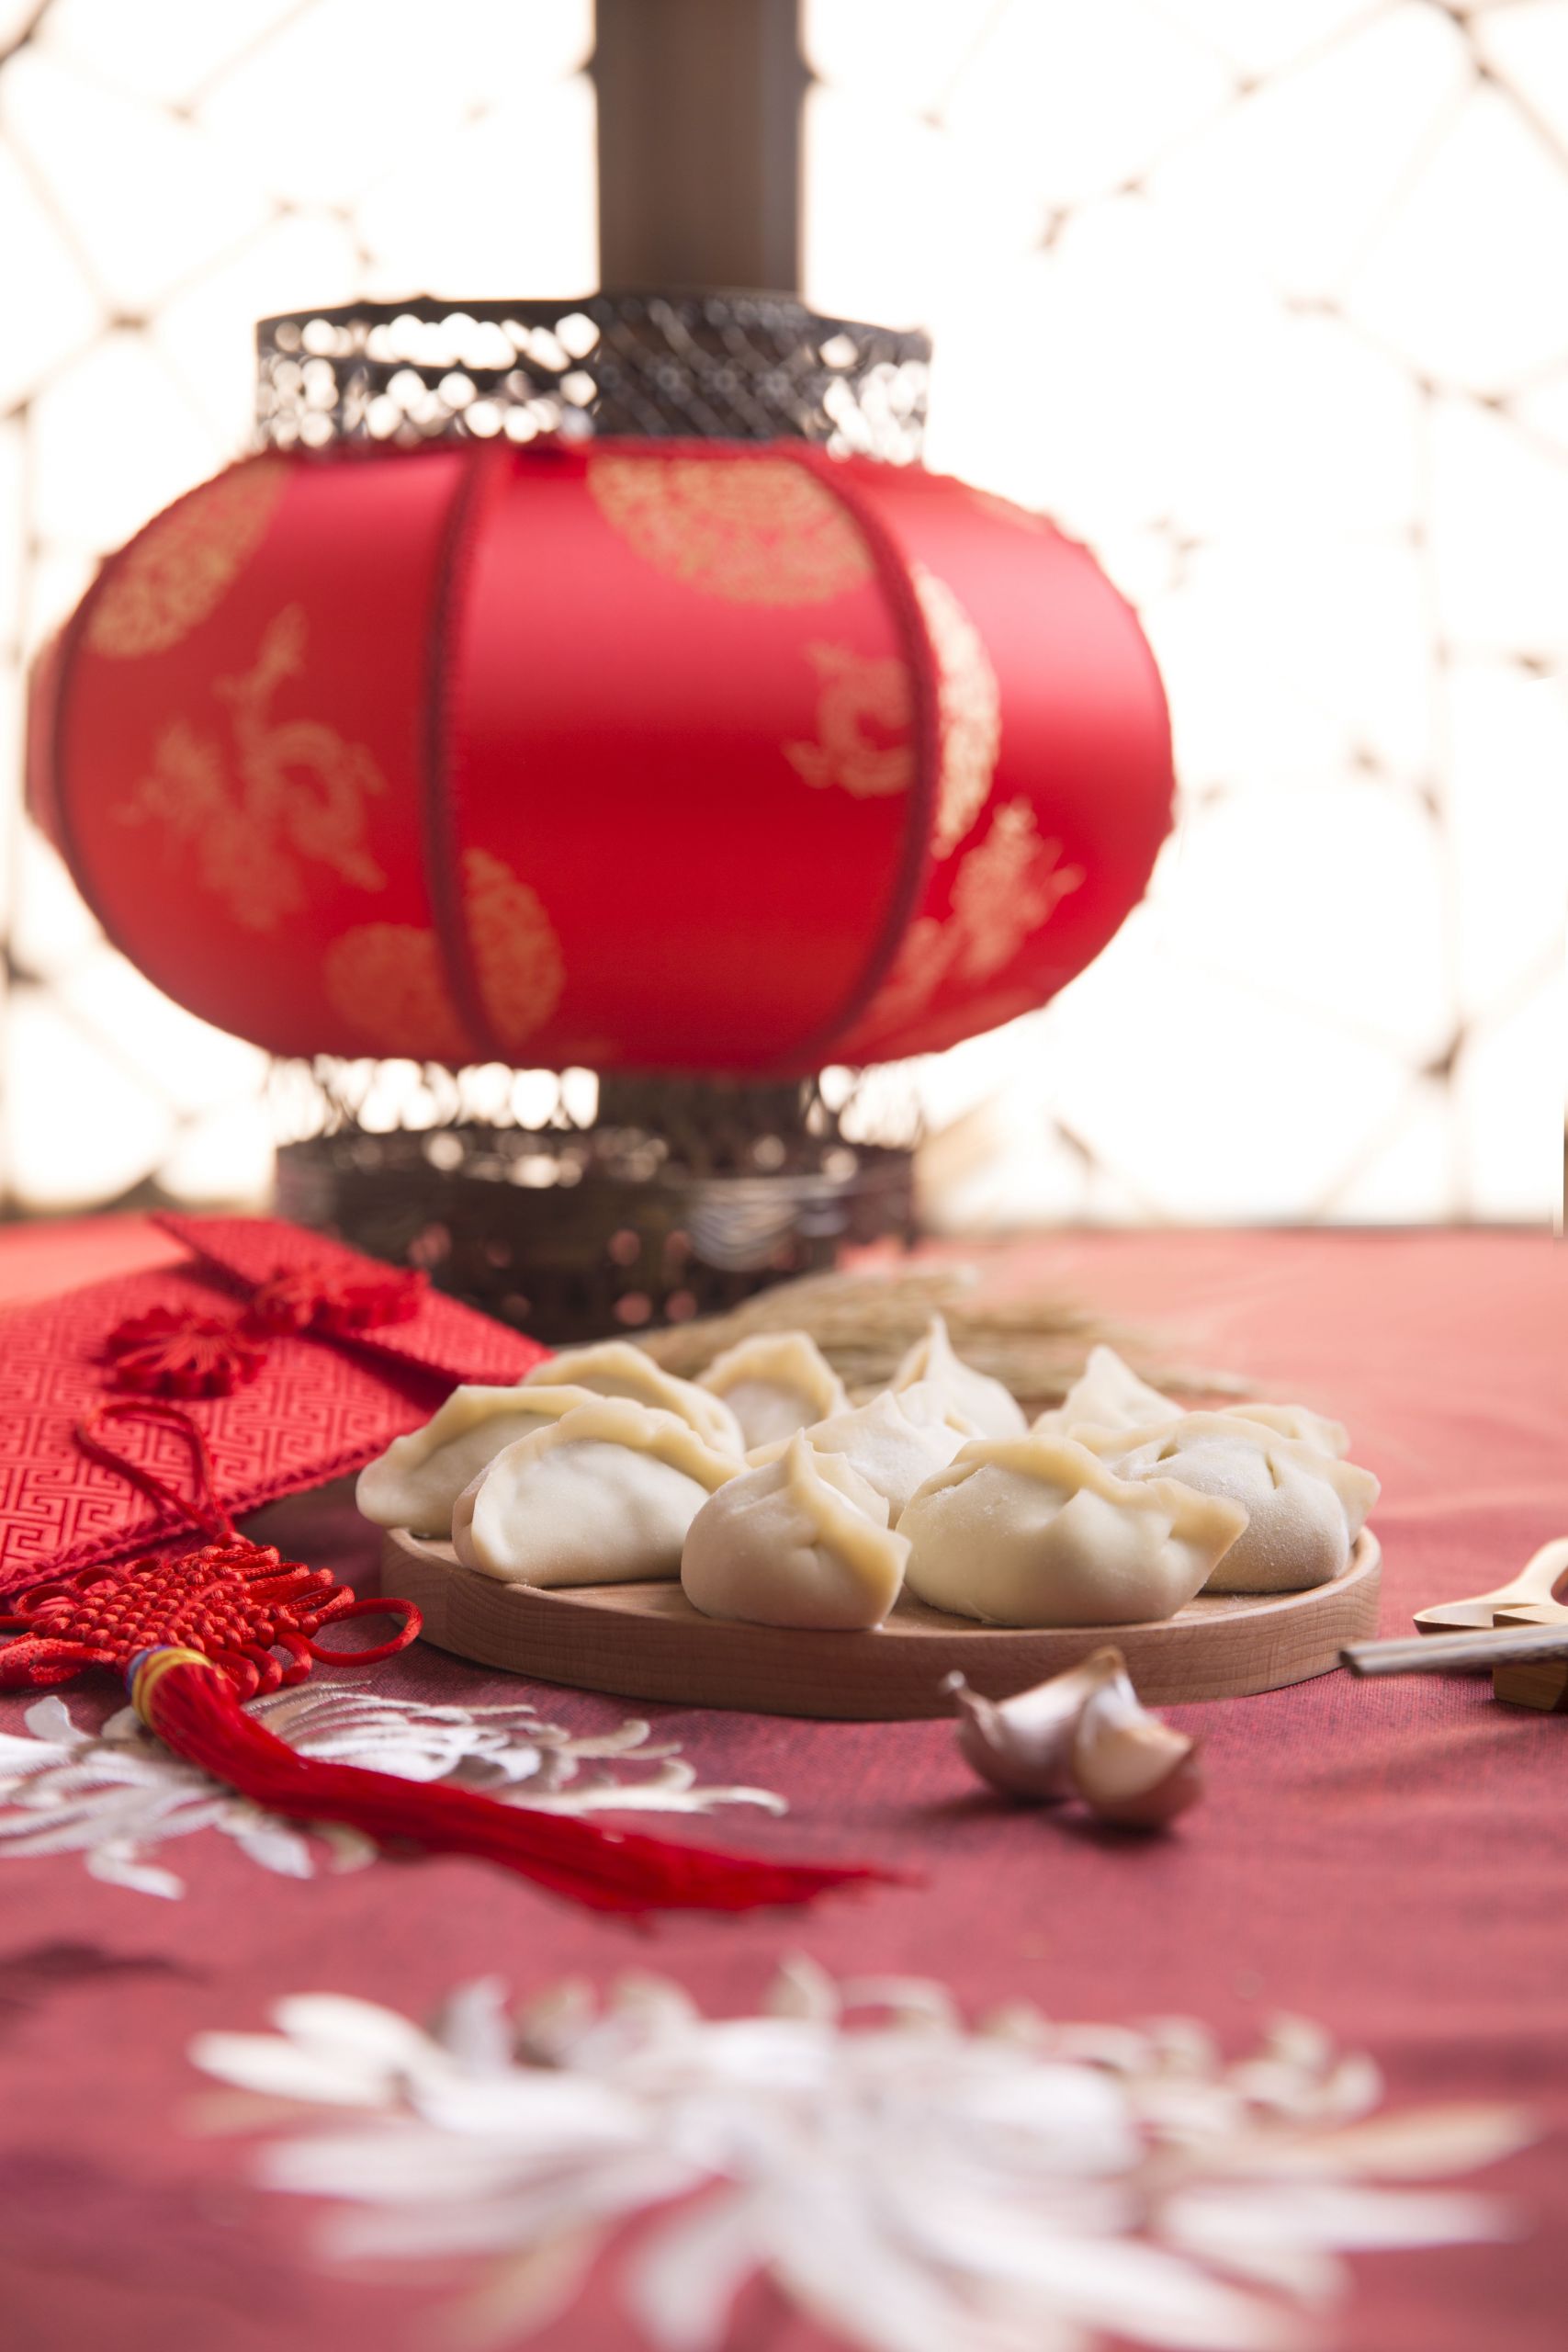 Chinese New Year Dumplings Recipe
 Yuanxiao Dumpling Recipe for Chinese New Year